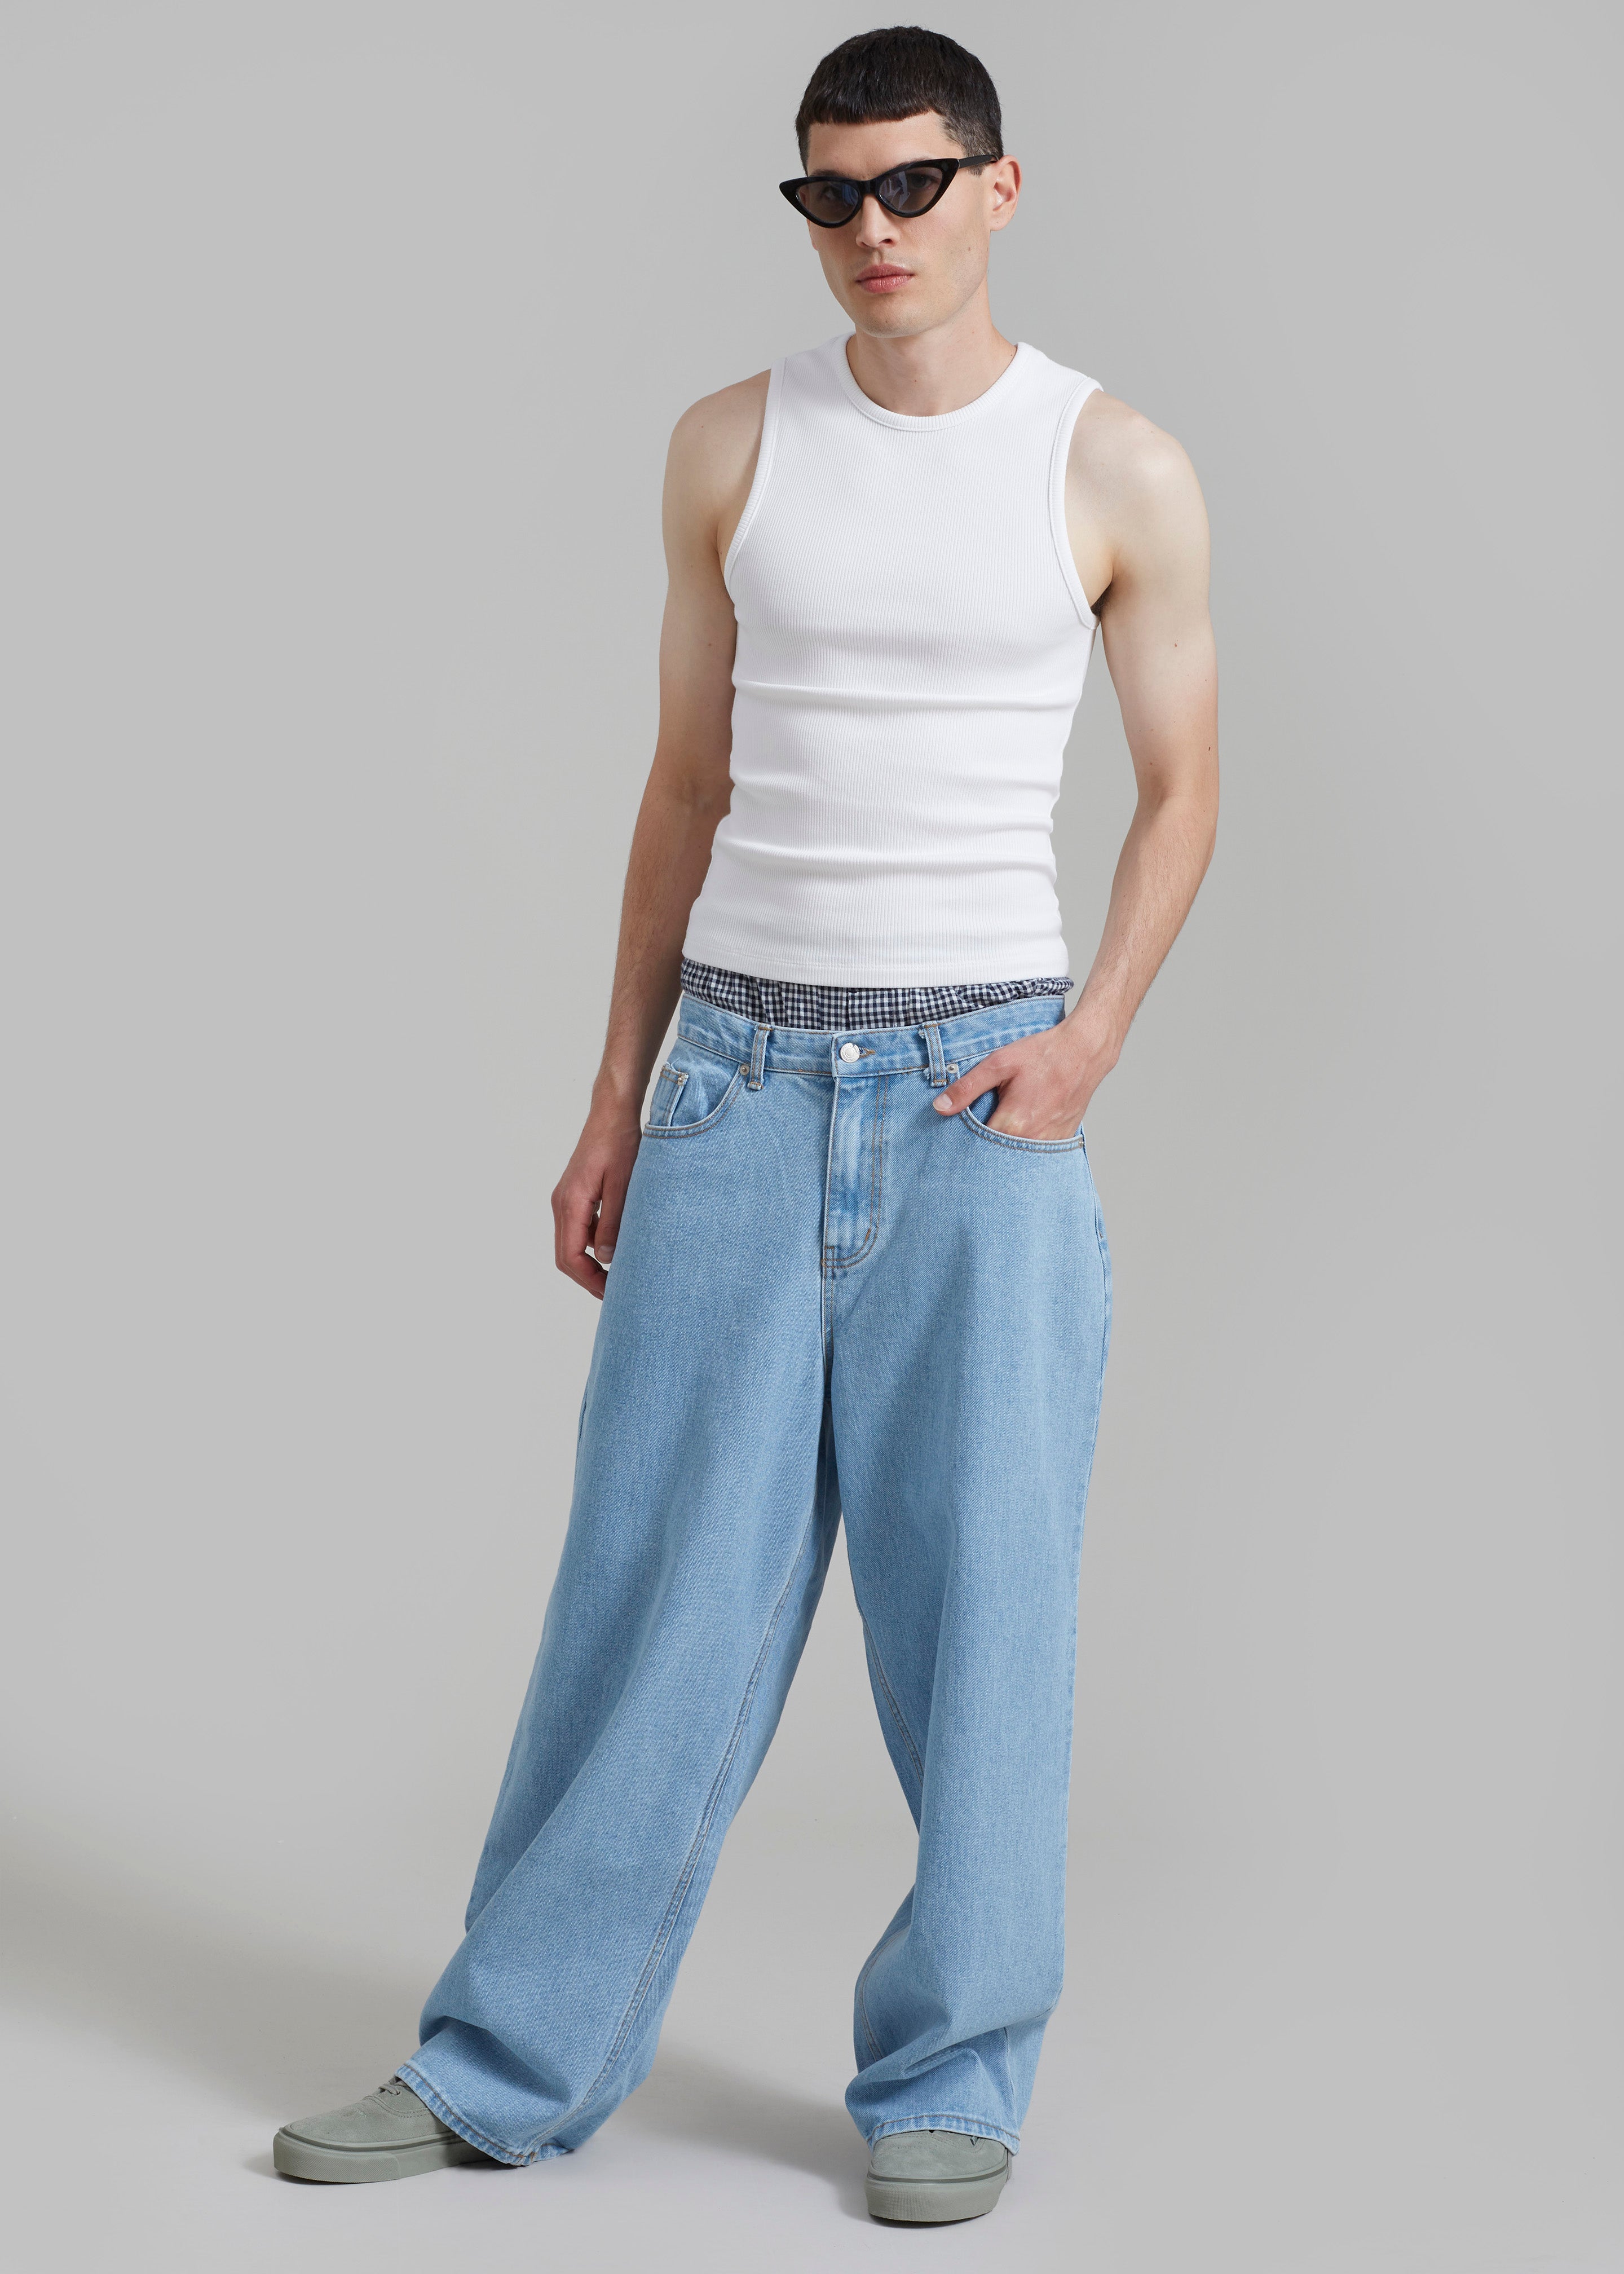 Connor Jeans - Worn Wash - 3